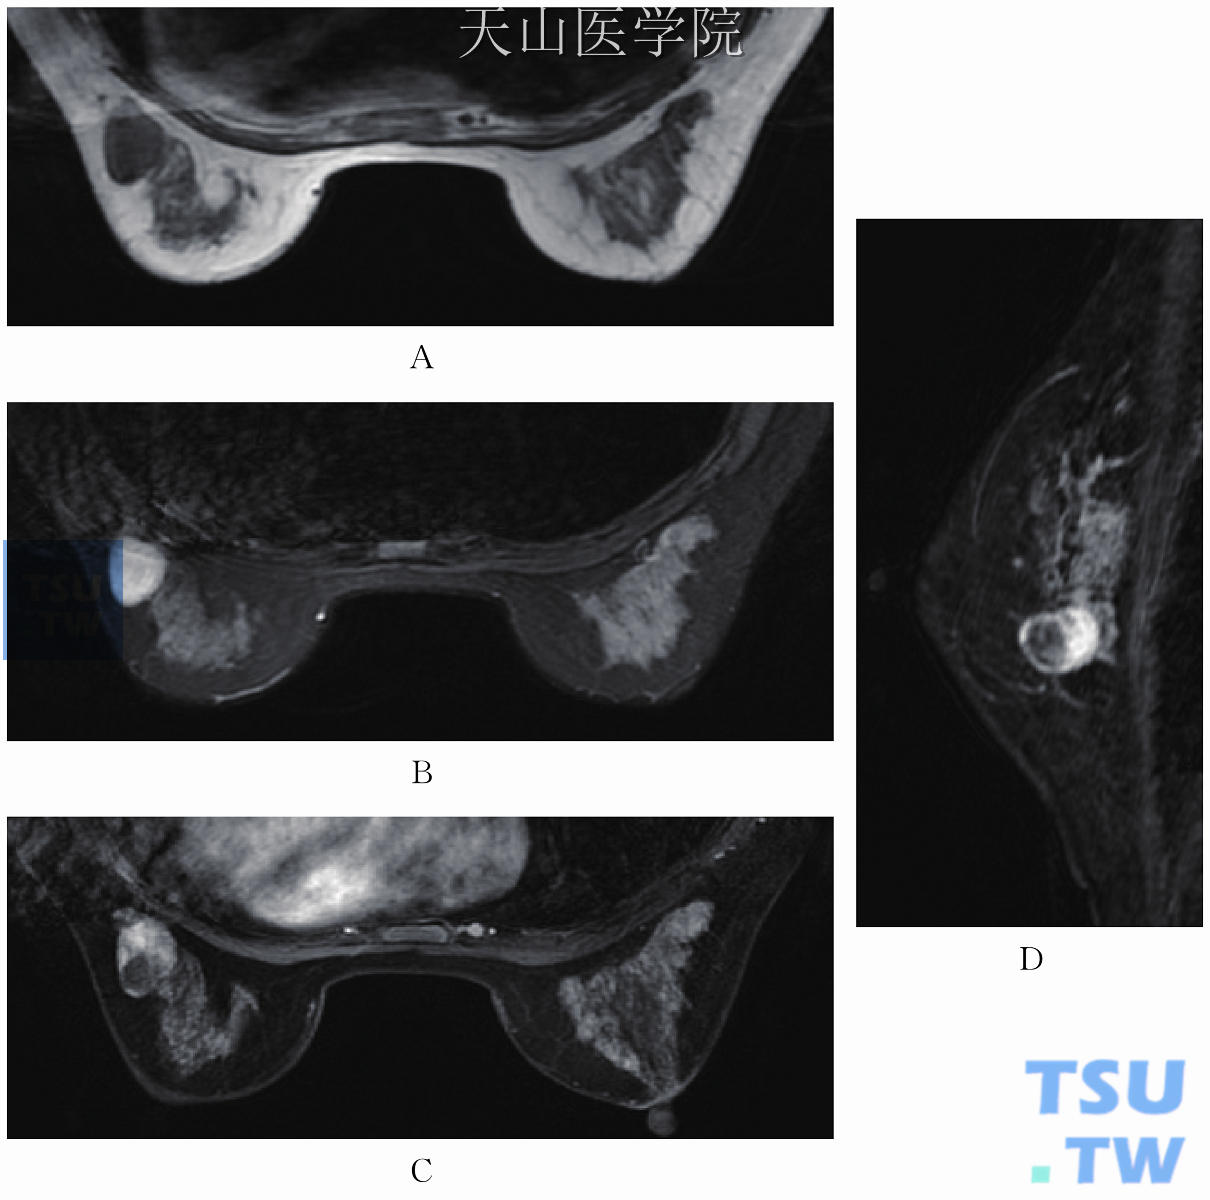 左乳纤维腺瘤。T1WI低信号（A），T2WI高信号（B），增强扫描（C、D）提示实性部分明显均匀强化，囊性部分不强化